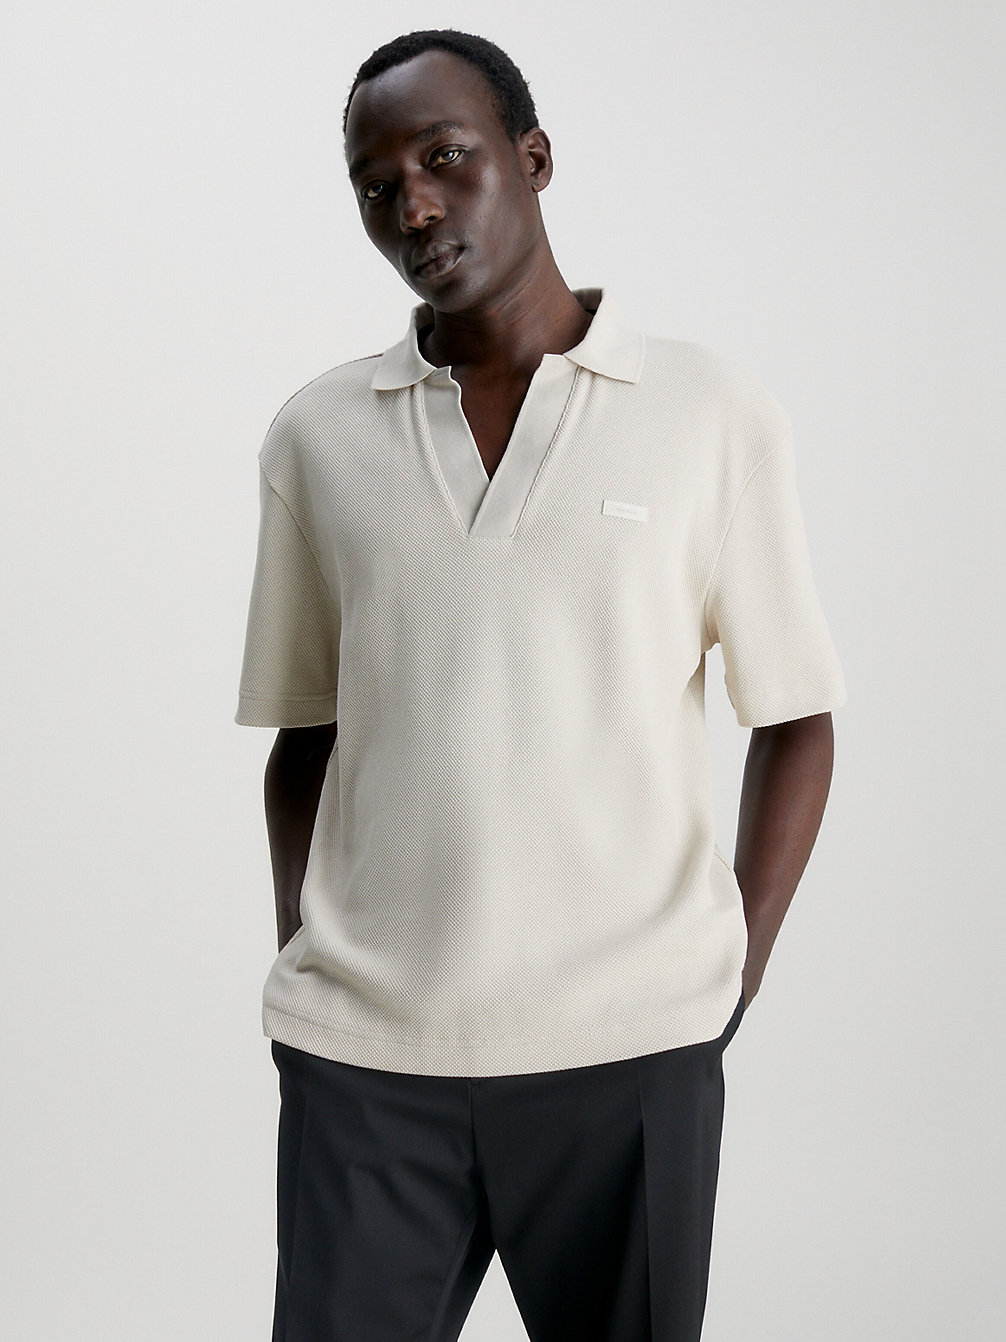 STONY BEIGE > Koszulka Polo Z Piki Z Otwartym Kołnierzykiem > undefined Mężczyźni - Calvin Klein